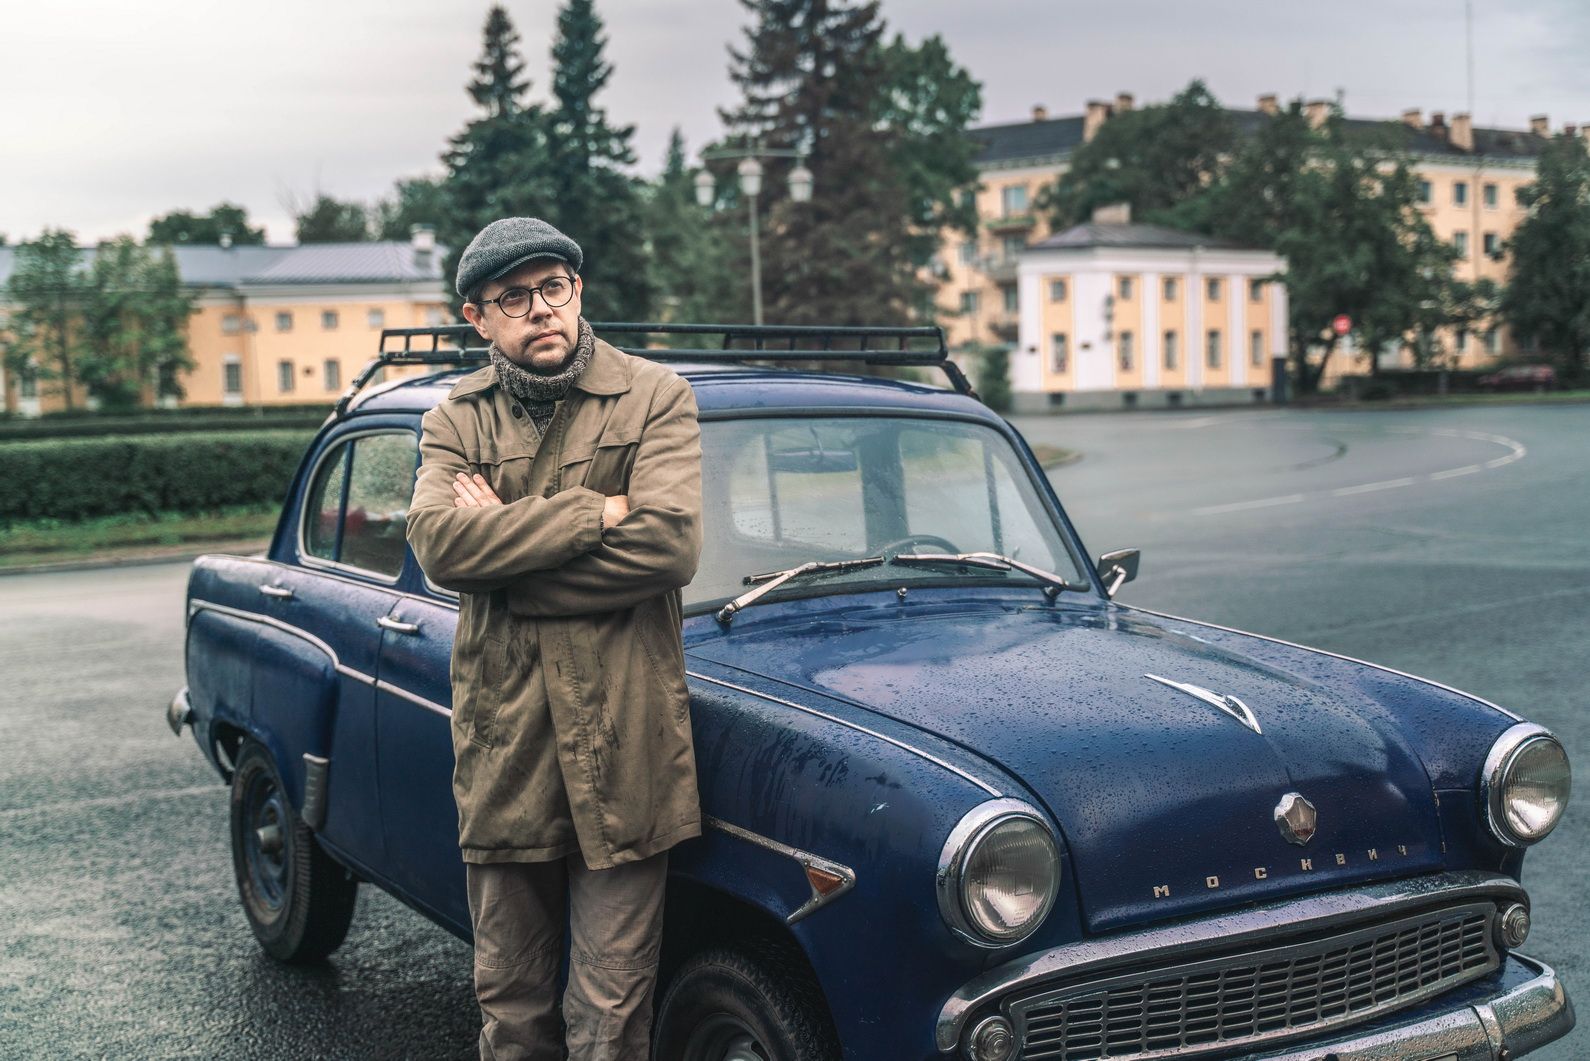 Päähenkilö (Vlad Timonin) liikkuu elokuvassa Moskvitš 403 -autolla, joka on vuodelta 1965. Elokuvan ikäsuositus 12+. Kuva: Varvara Samarkina